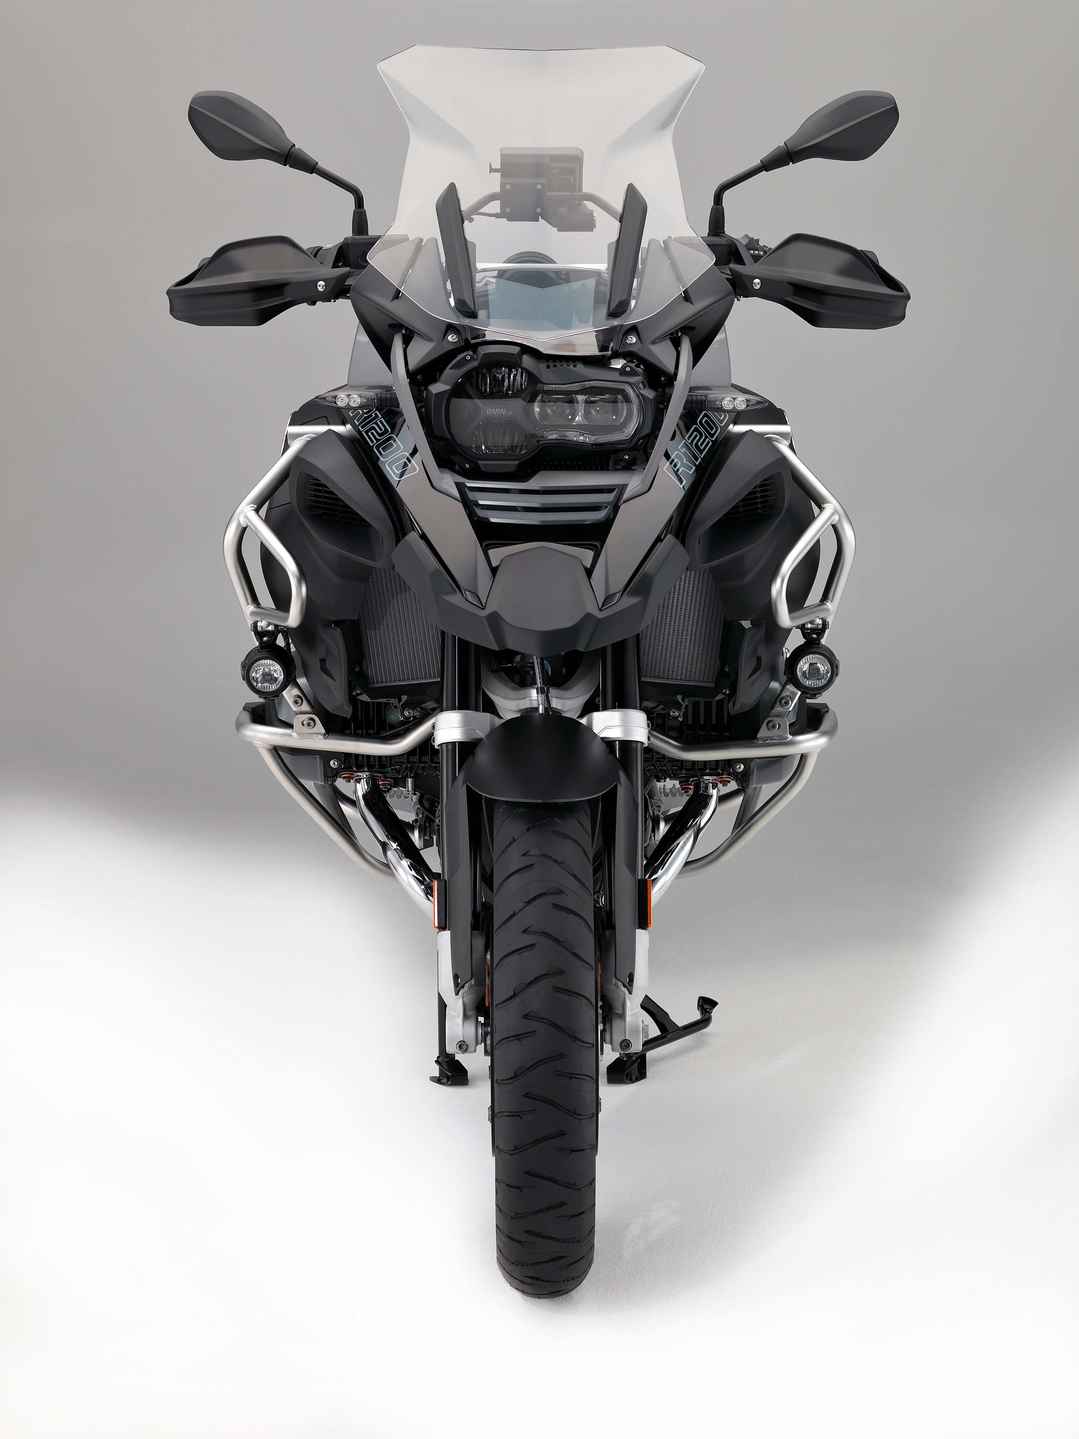 宝马水鸟摩托车bmw-r1200gs-adventure-triple黑色版图片